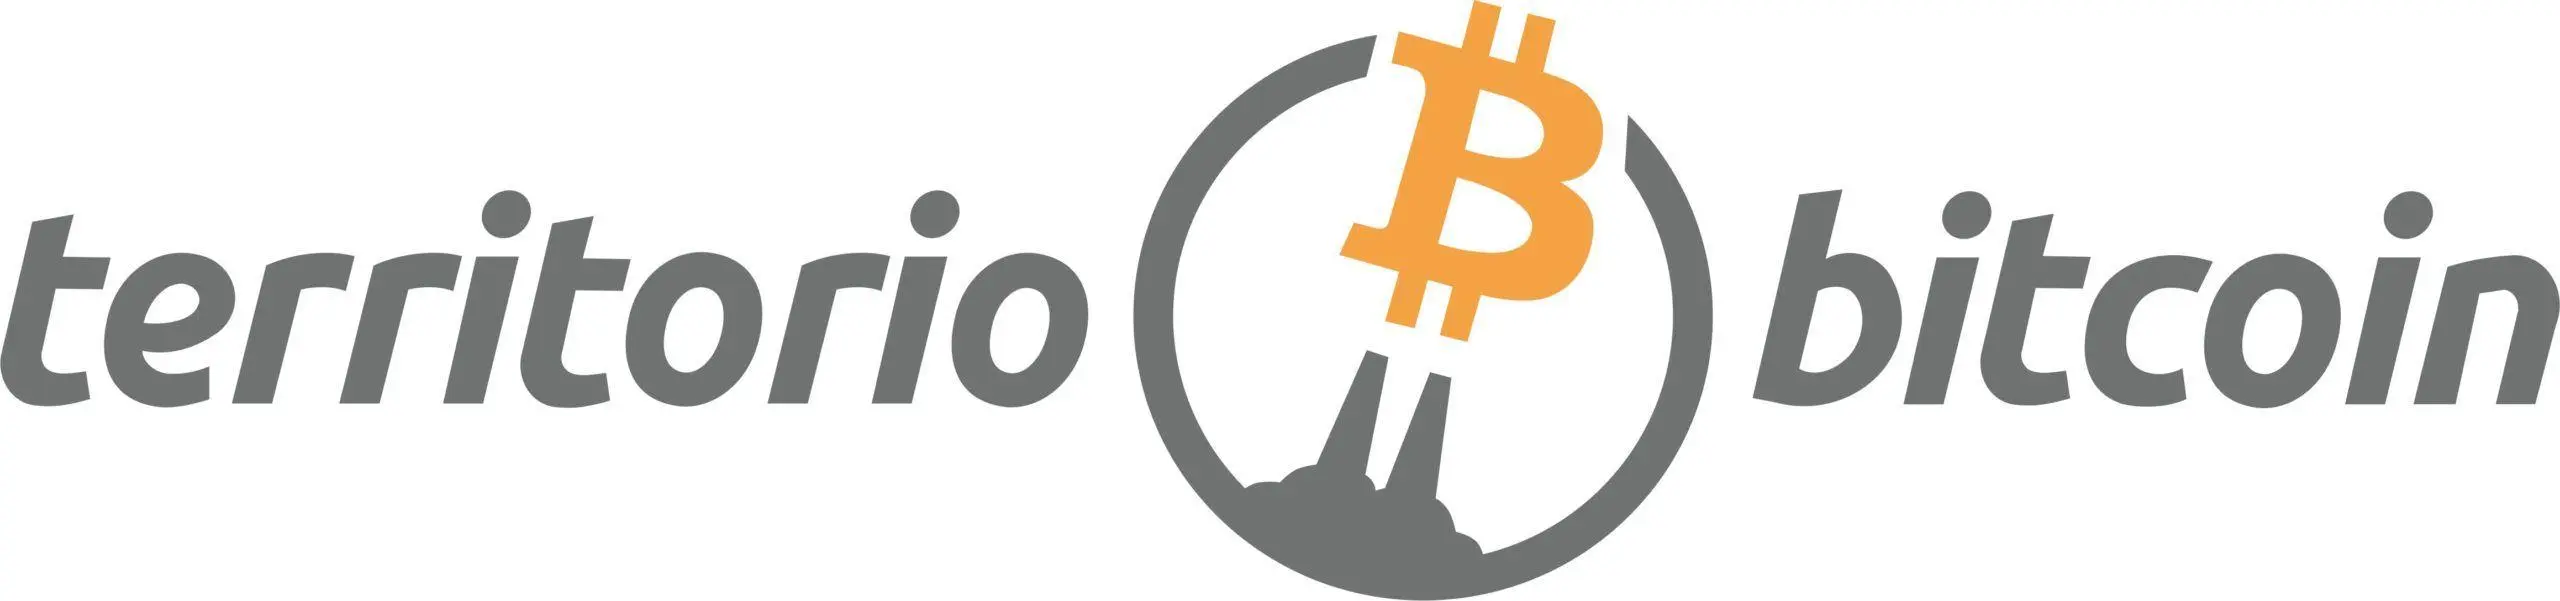 territorio-bitcoin-scaled